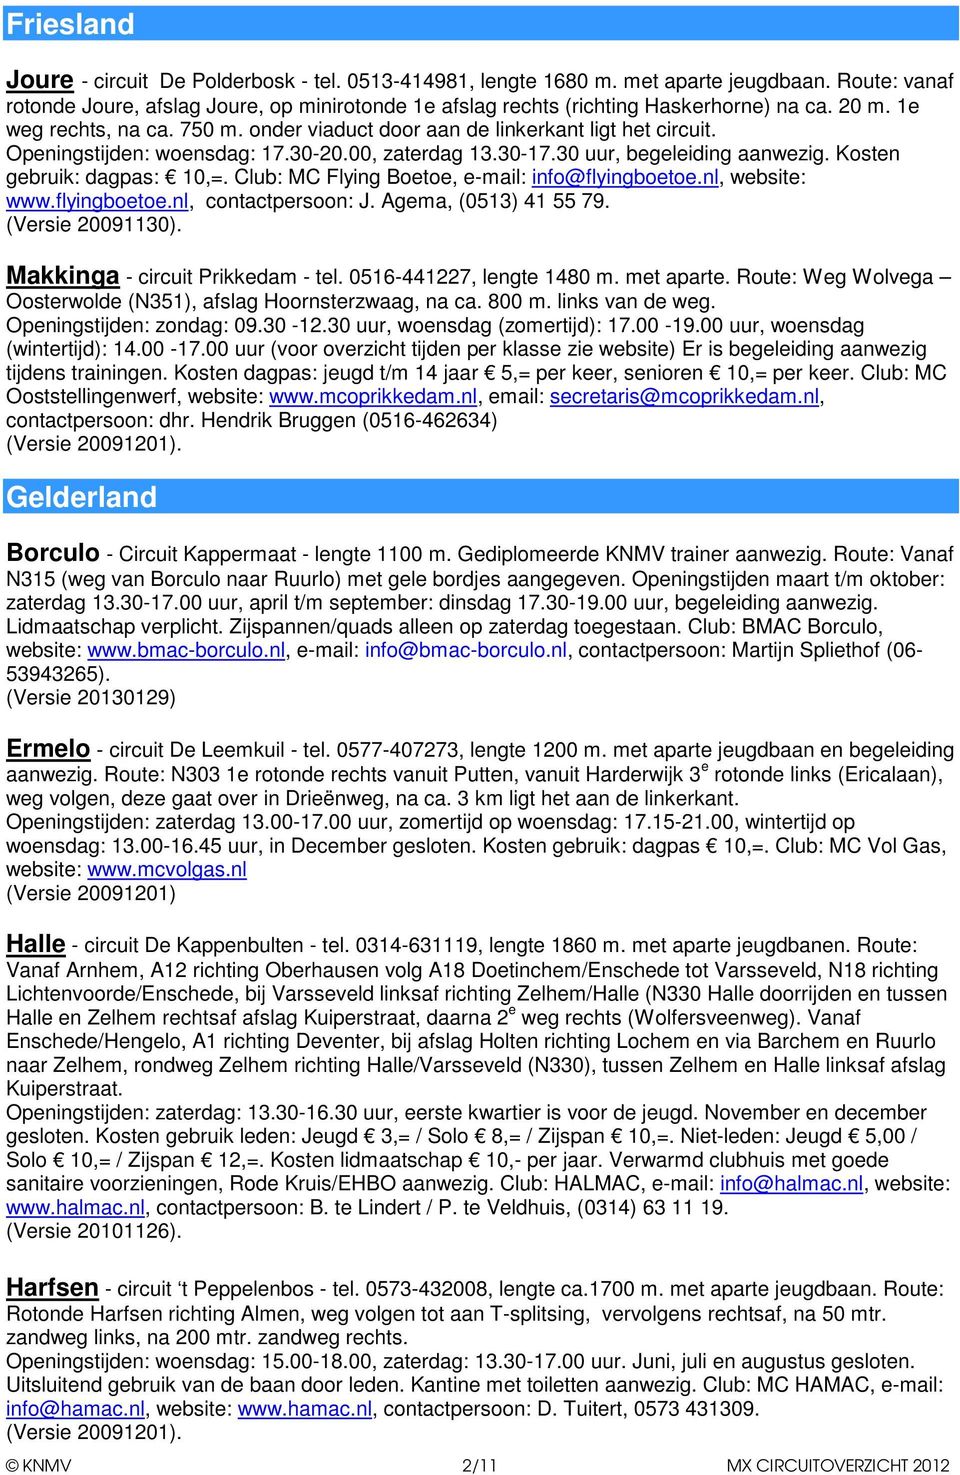 Kosten gebruik: dagpas: 10,=. Club: MC Flying Boetoe, e-mail: info@flyingboetoe.nl, website: www.flyingboetoe.nl, contactpersoon: J. Agema, (0513) 41 55 79. (Versie 20091130).